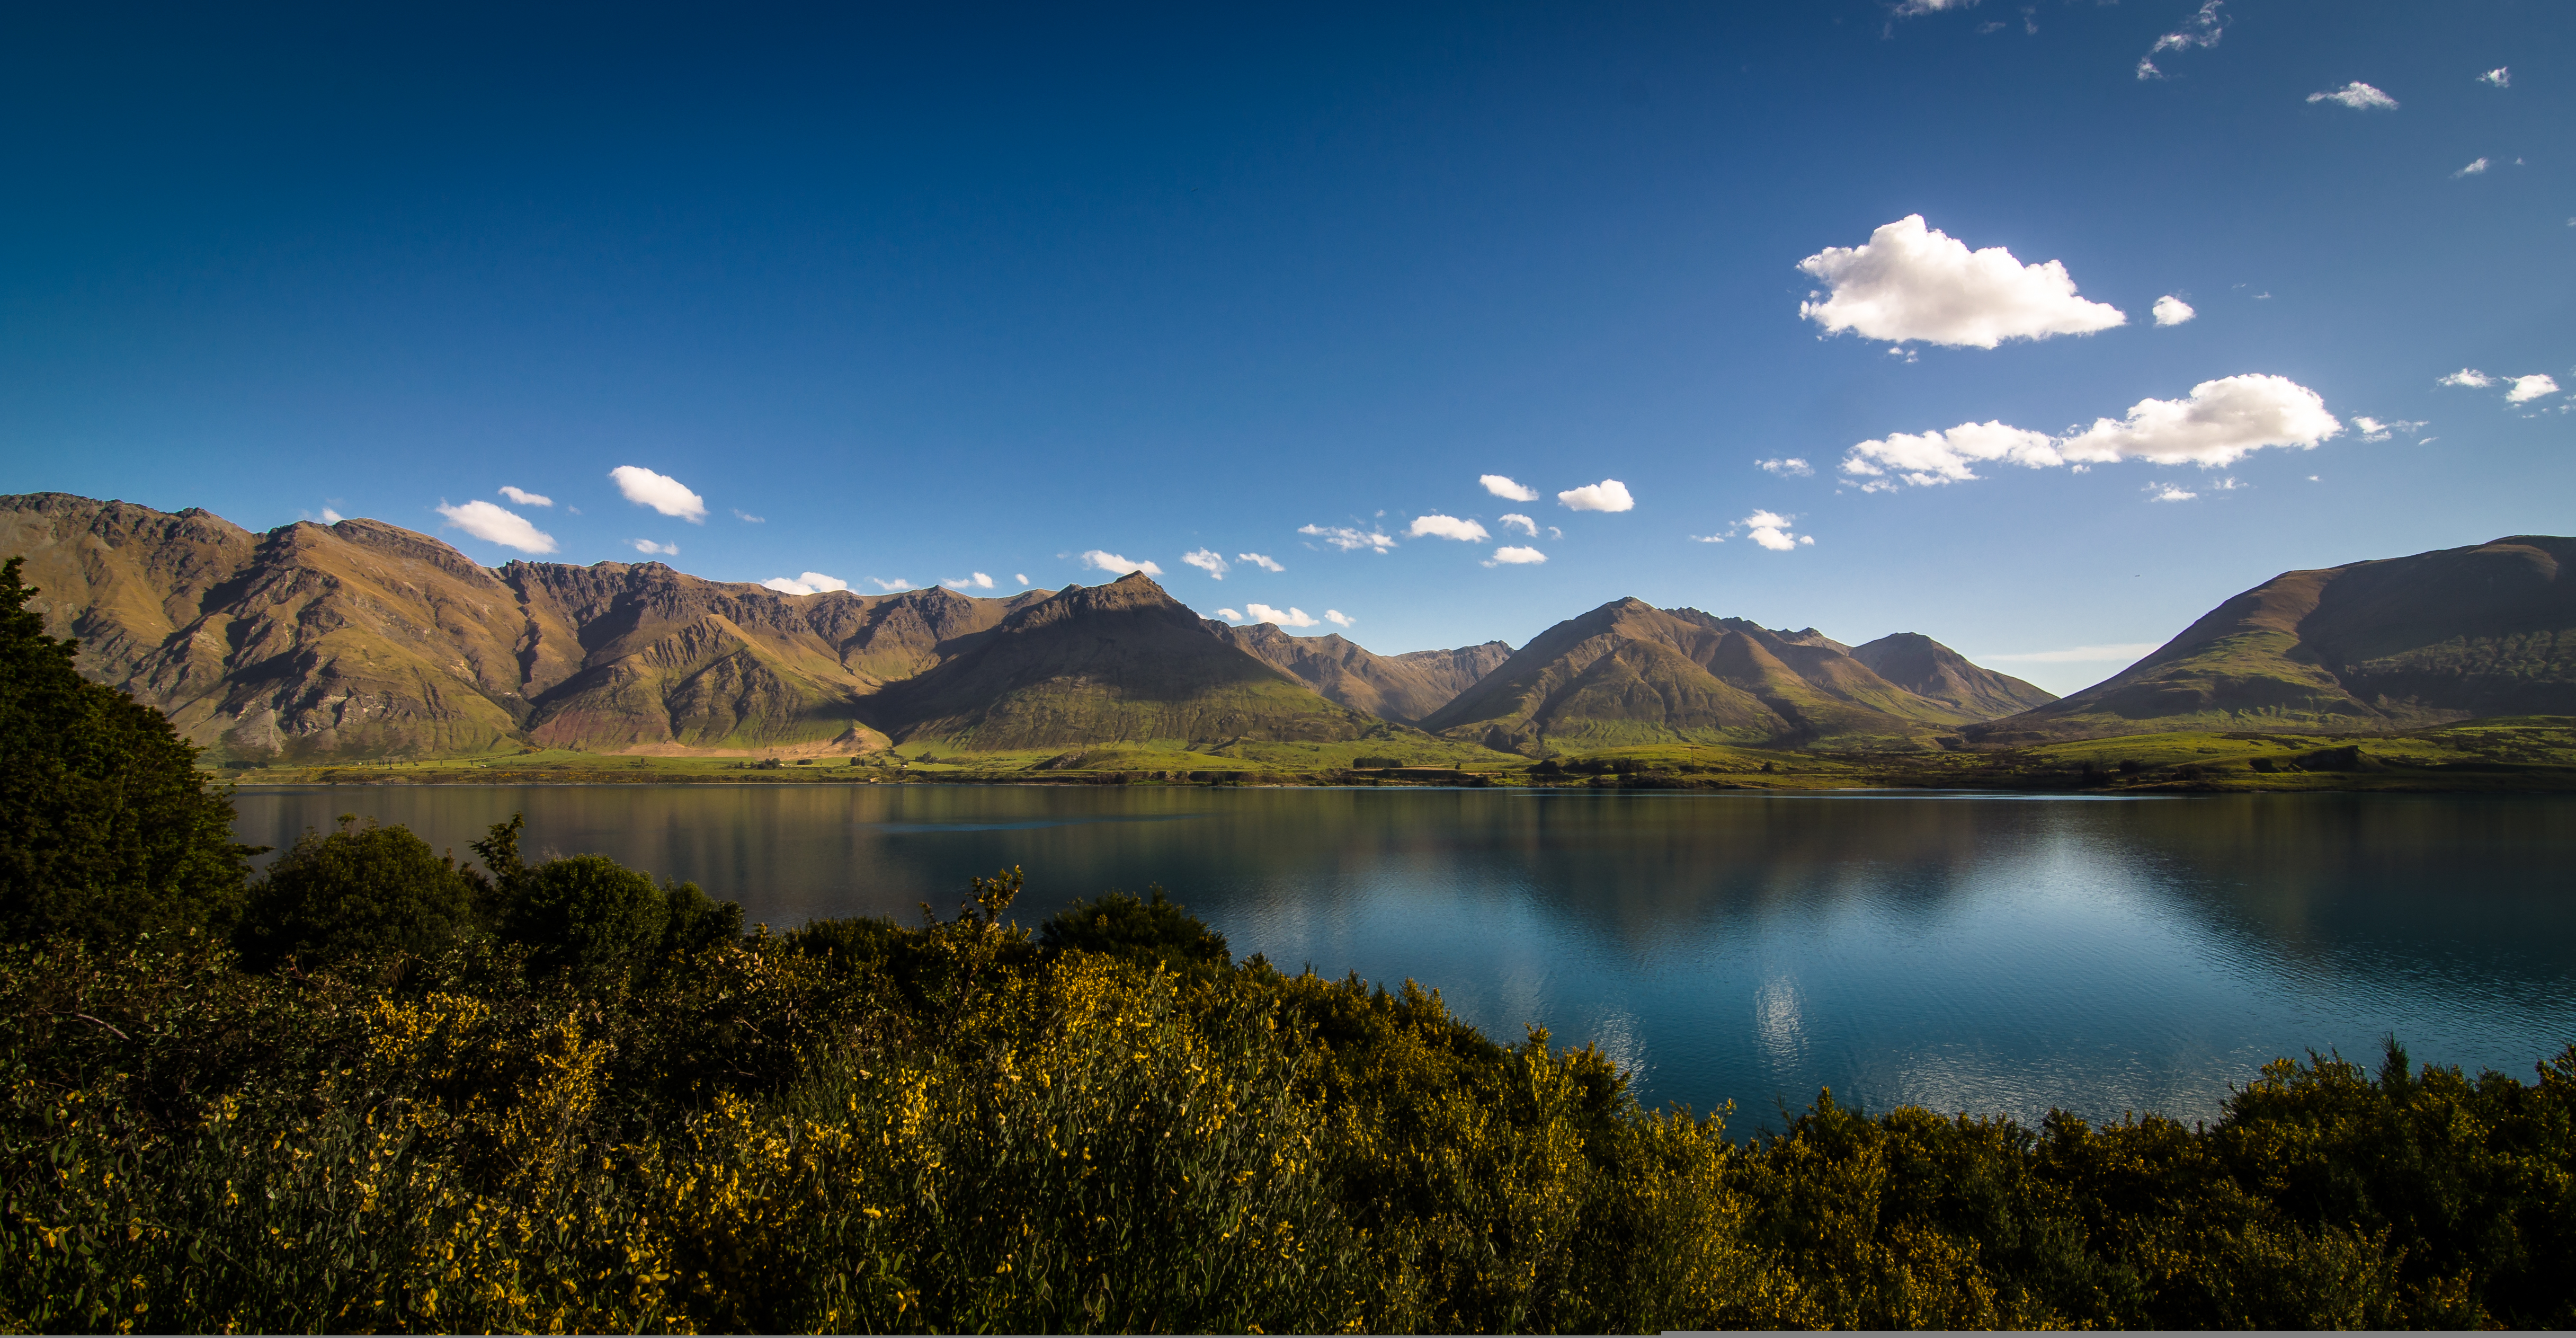 Sidelined_Landscape, Mt Cook, New Zealand без смс